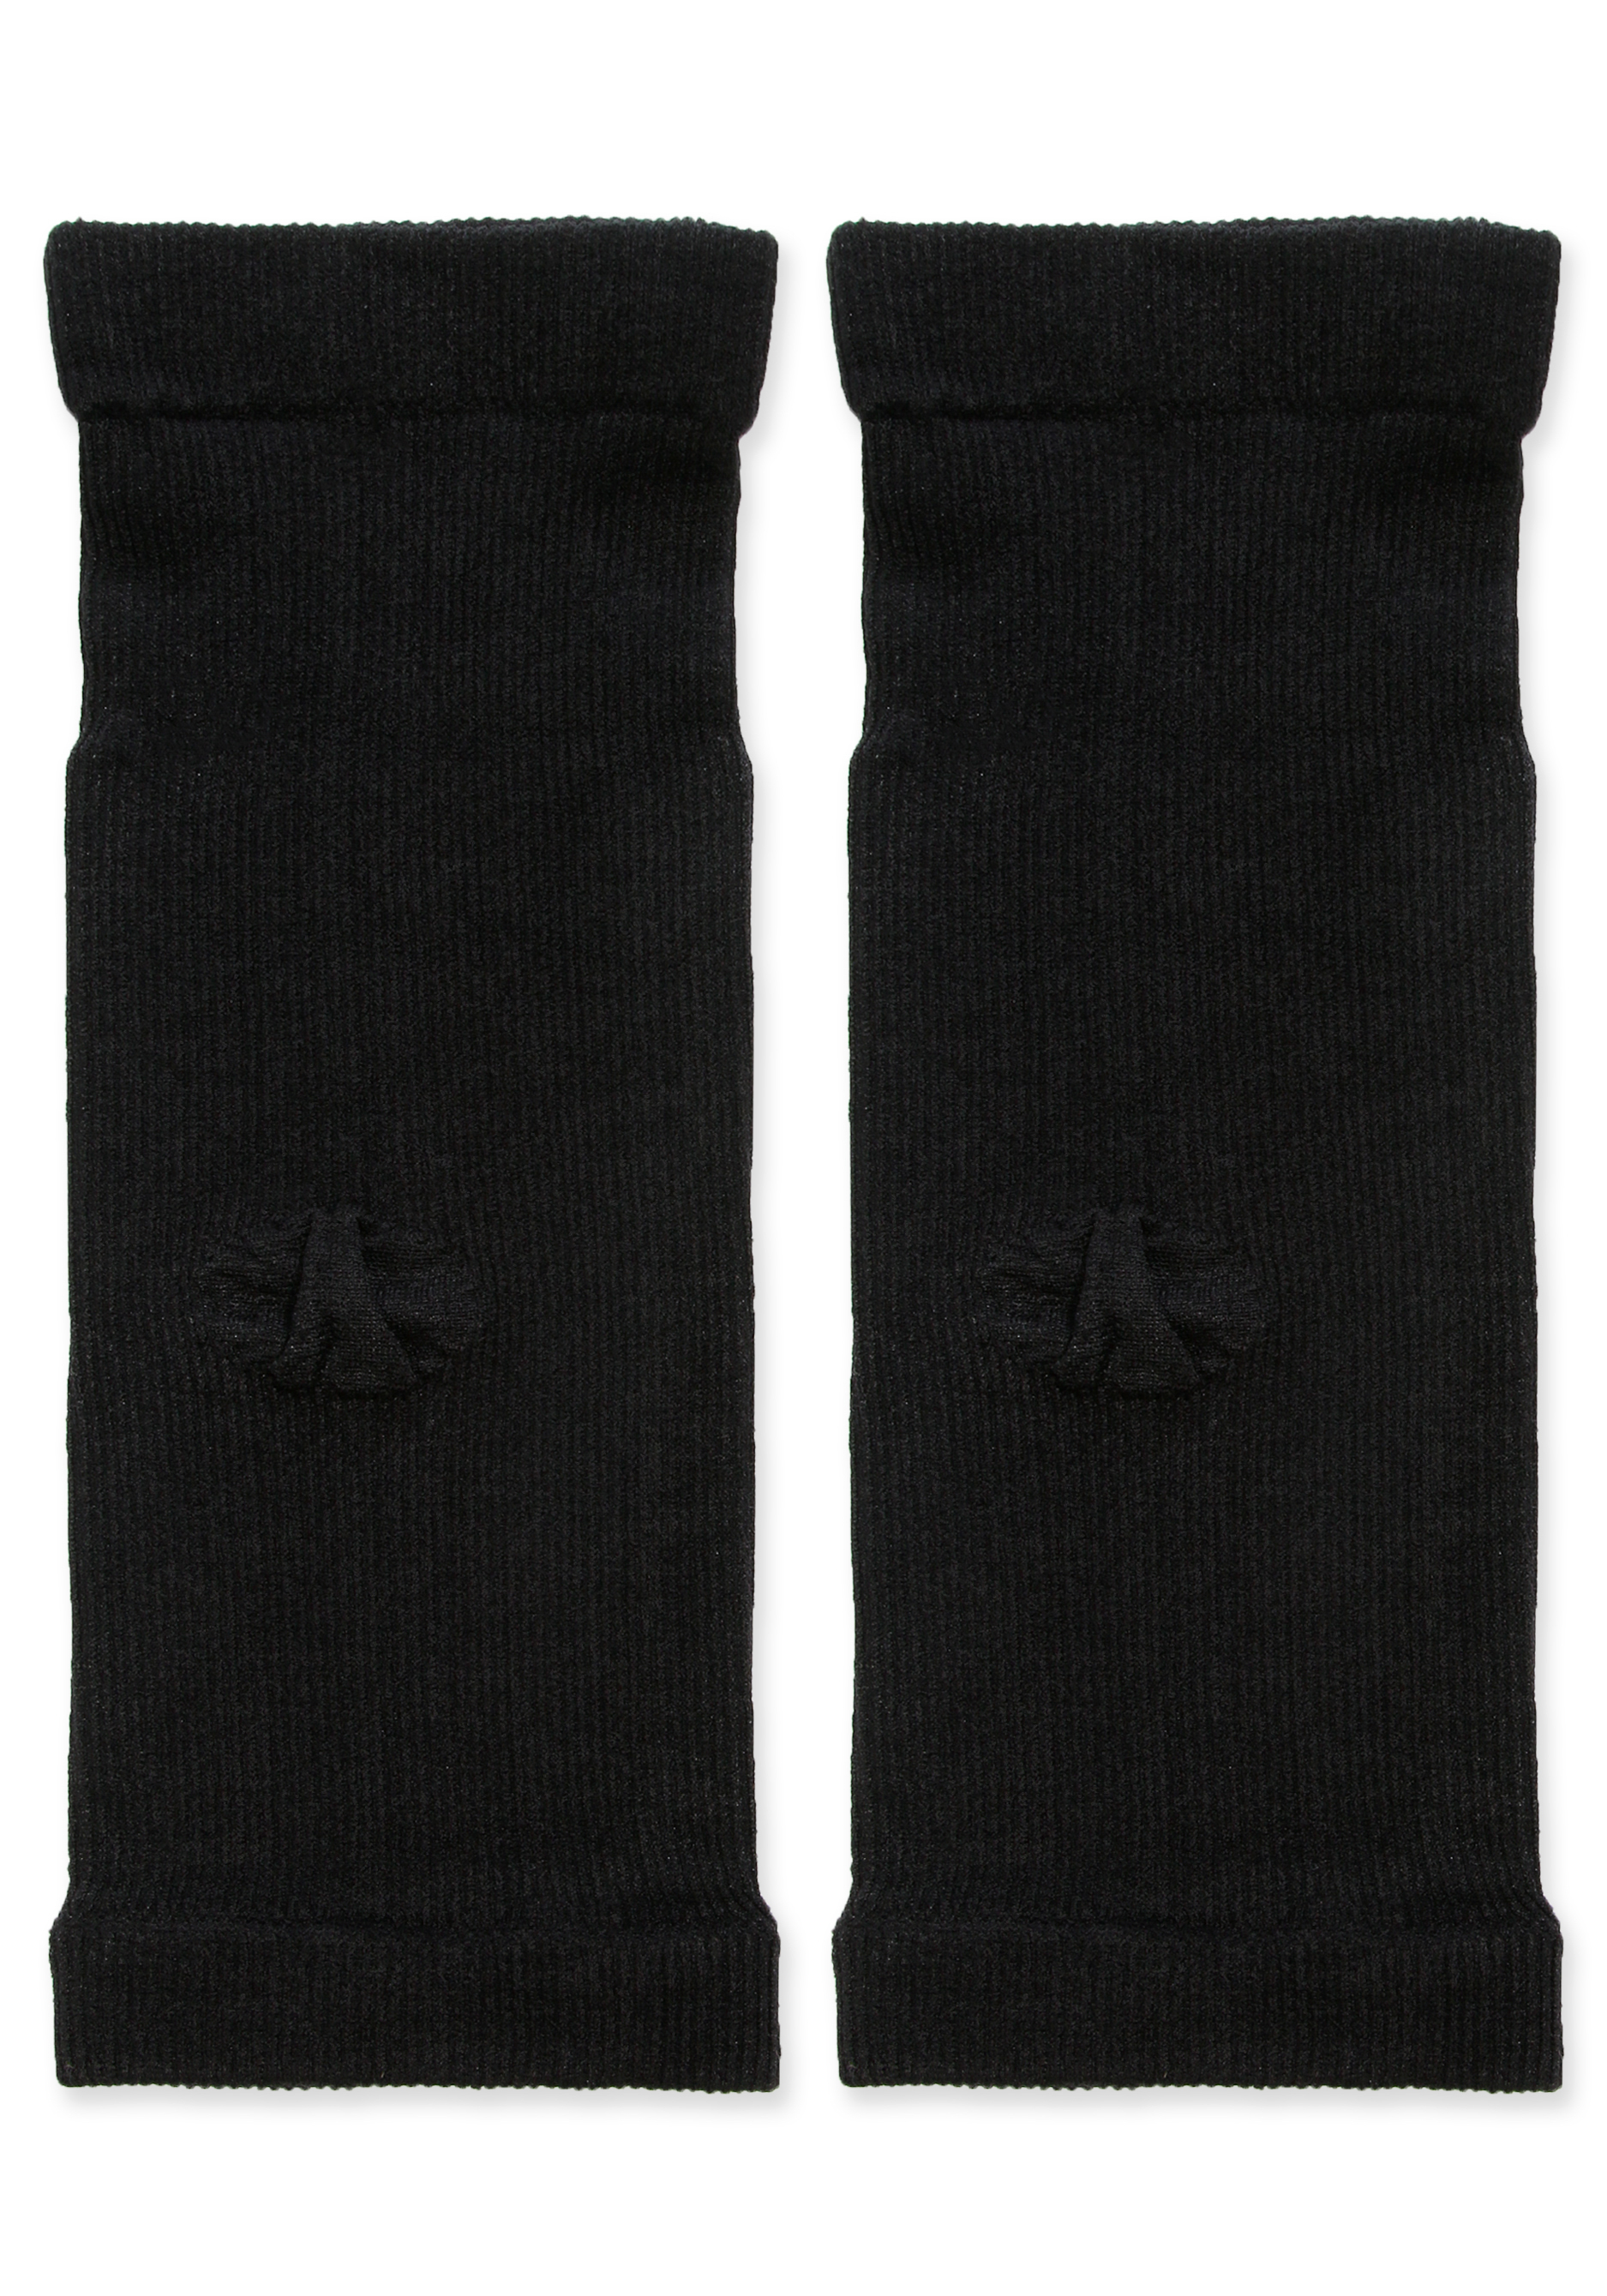 Бандаж локтевого сустава, 2 шт, цвет черный, размер 3 - фото 1